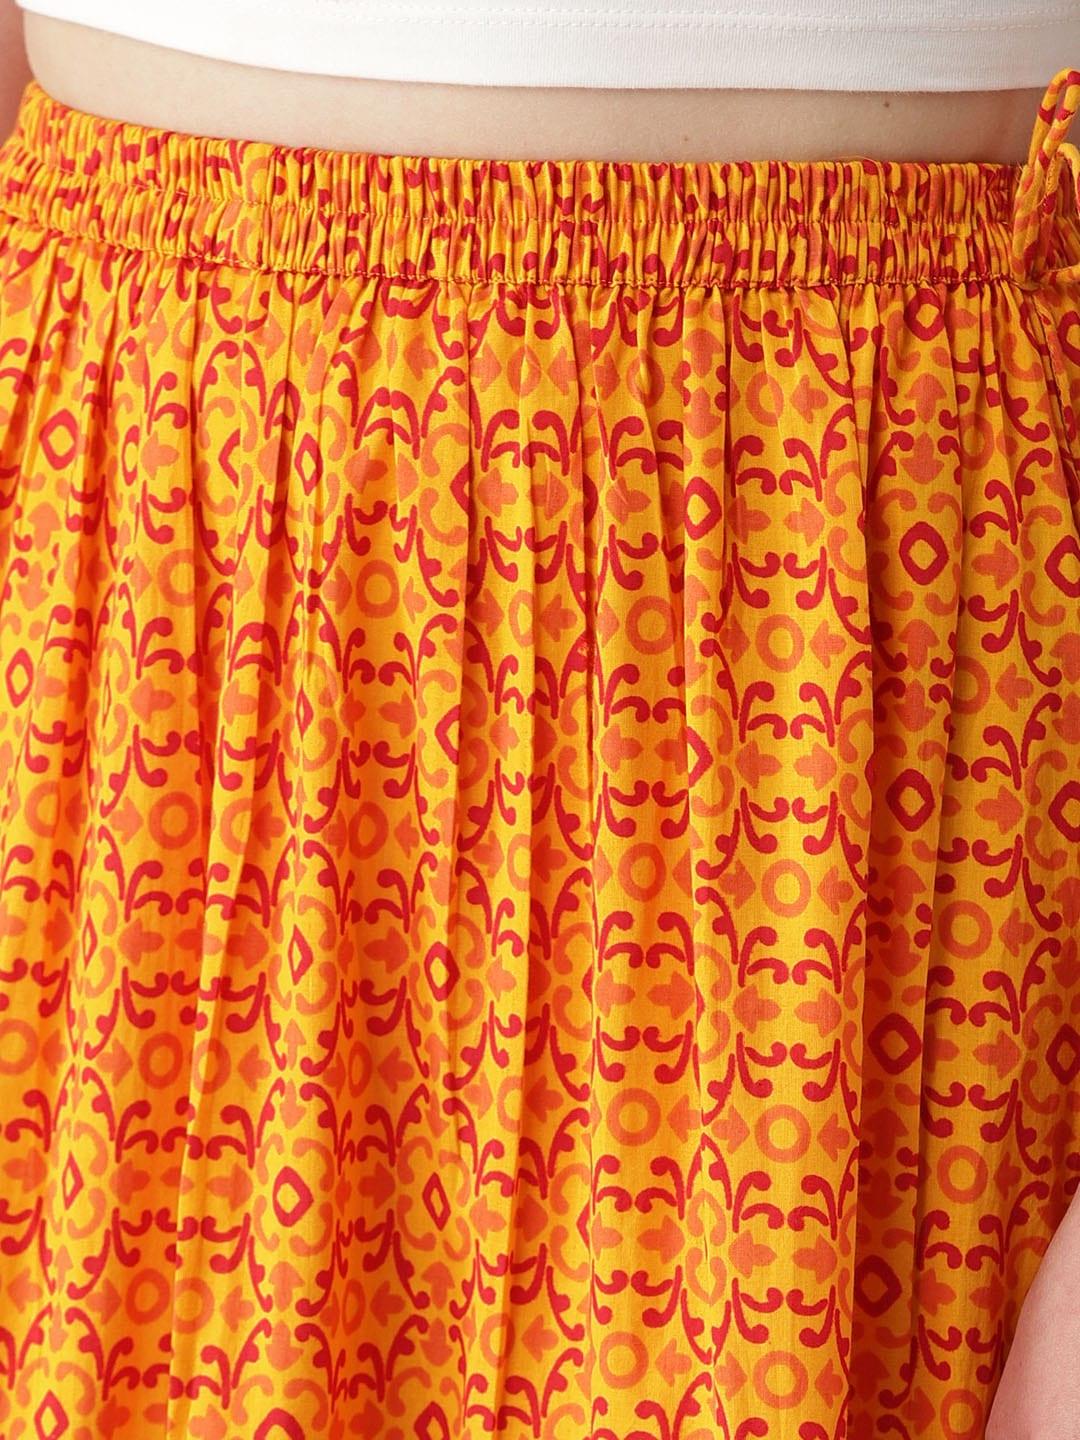 Yellow Printed Cotton Skirt - Libas